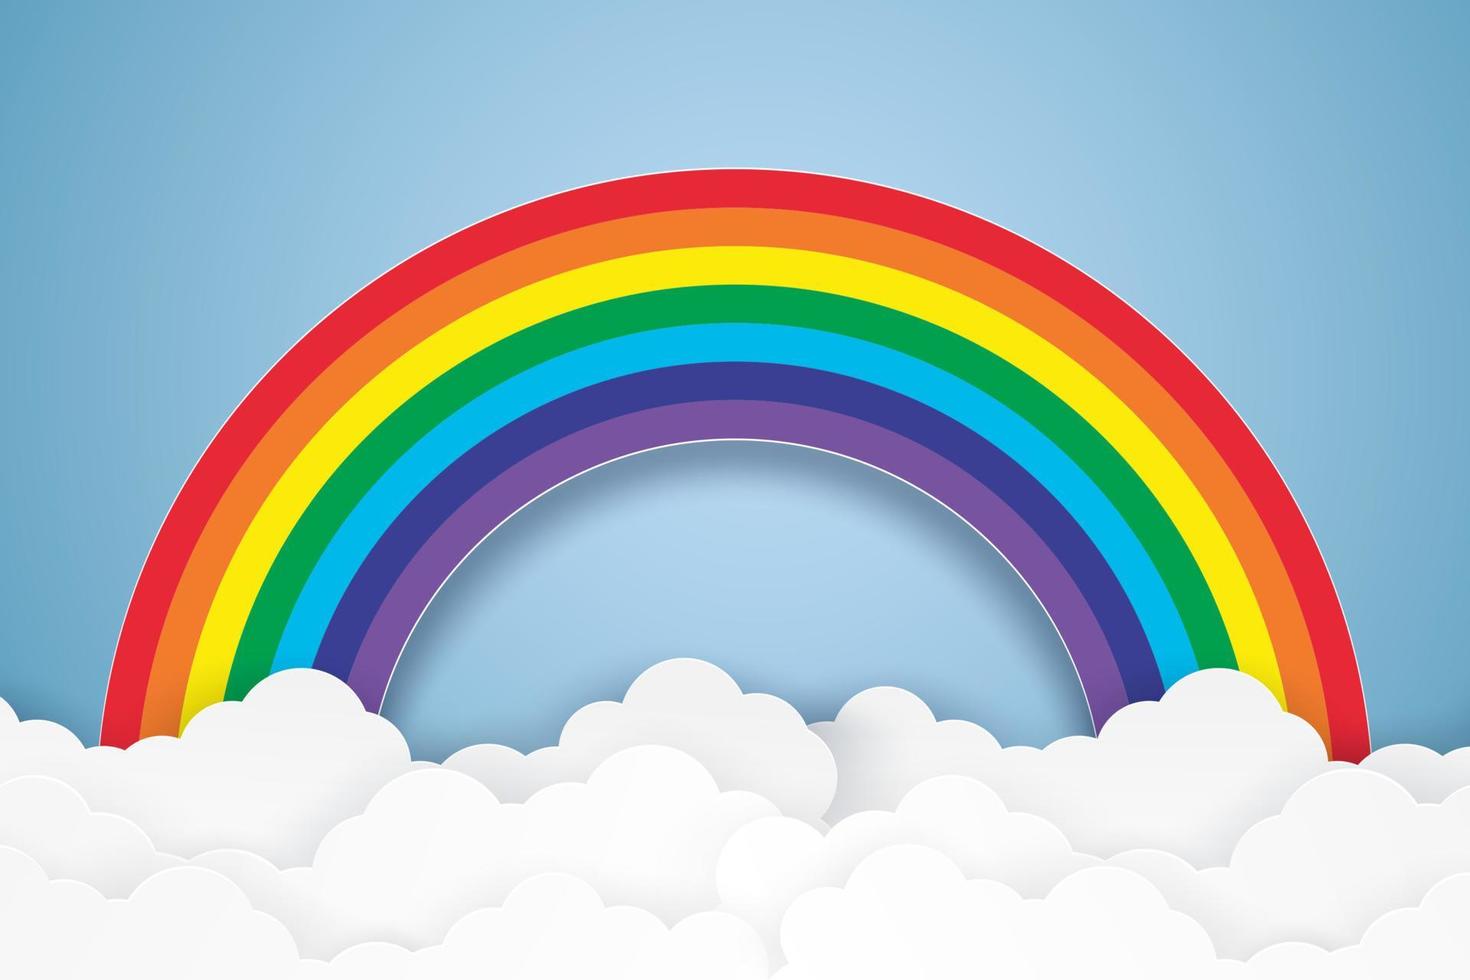 cielo azul con arco iris y nubes, estilo de arte en papel vector